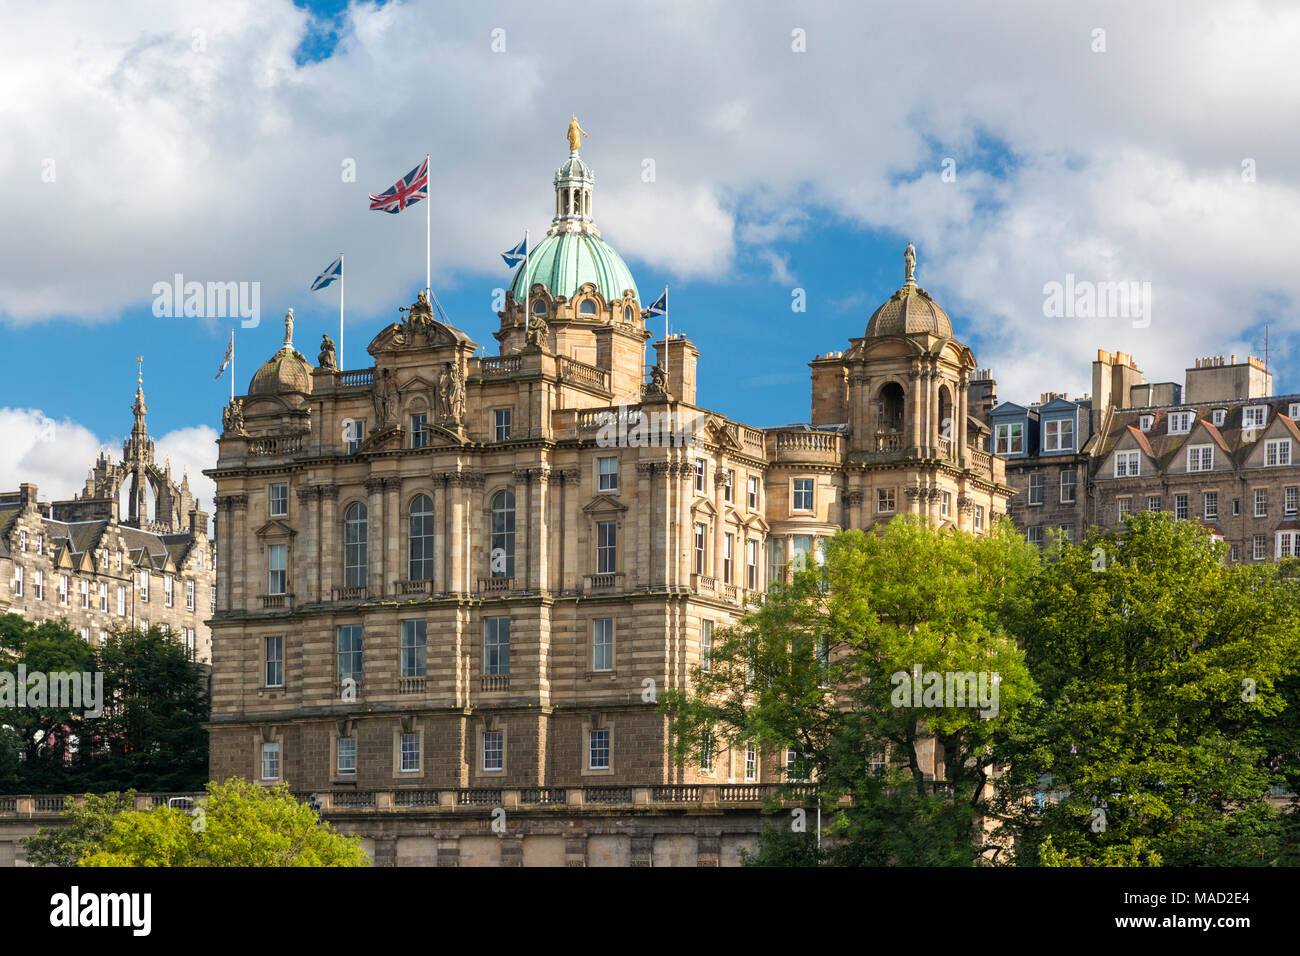 Je vois des drapeaux au cours de la Bank of Scotland, Édimbourg, Écosse, Royaume-Uni Banque D'Images